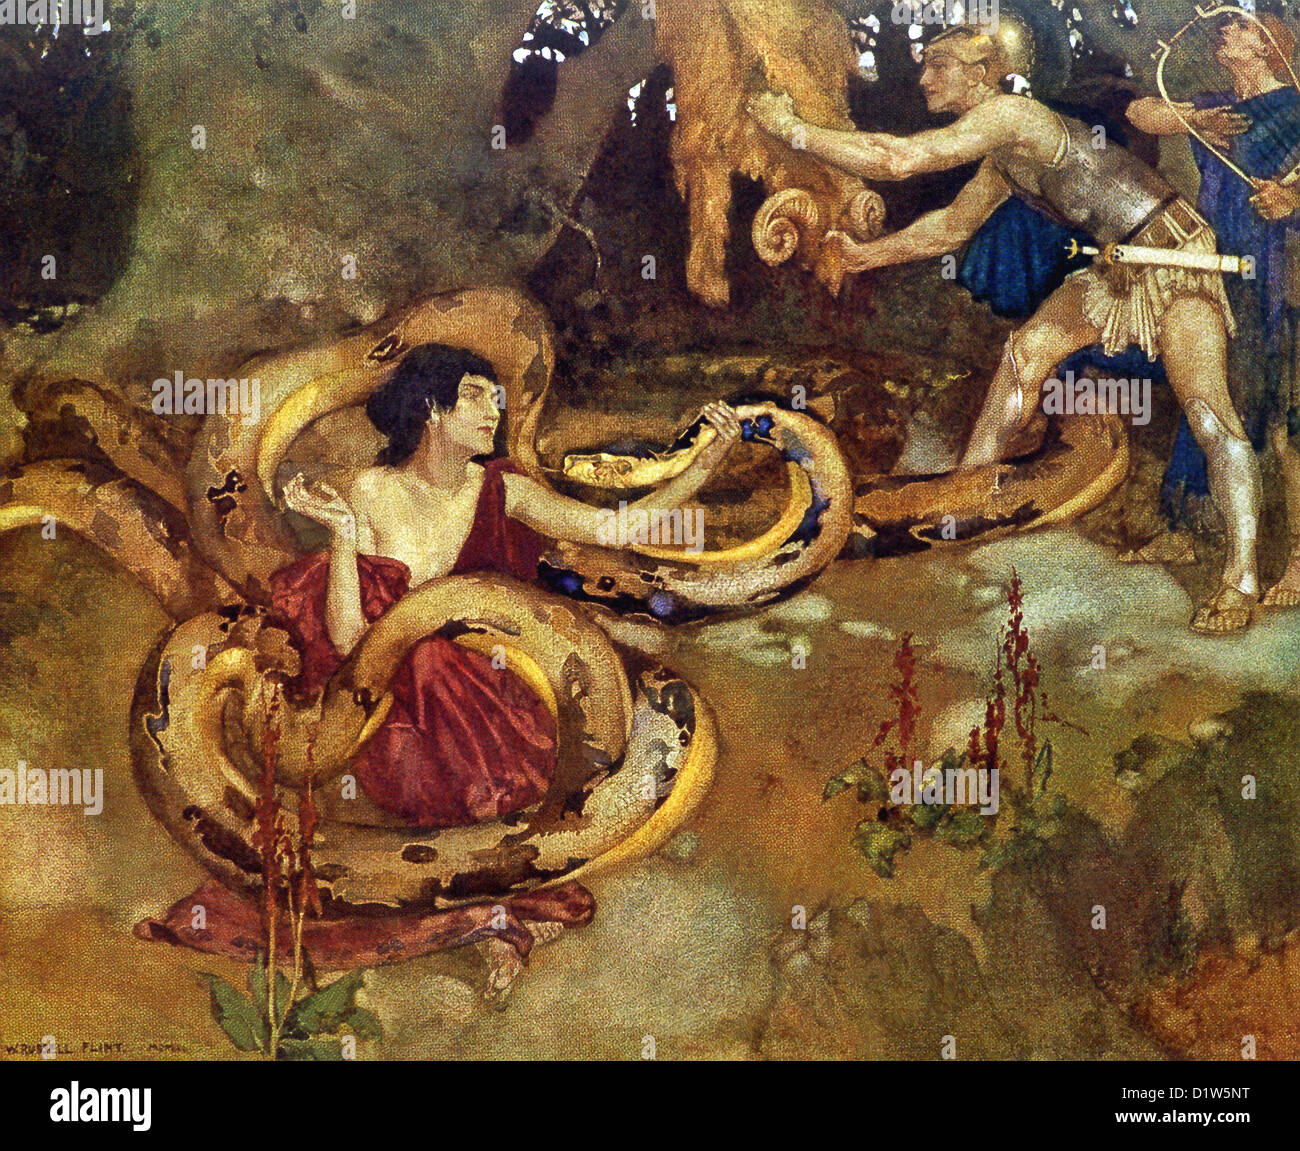 Hier sind Medea, die Tochter des Königs Aeetes von Colchis; Orpheus, charmant den Drachen; und Jason das goldene Vlies. Stockfoto